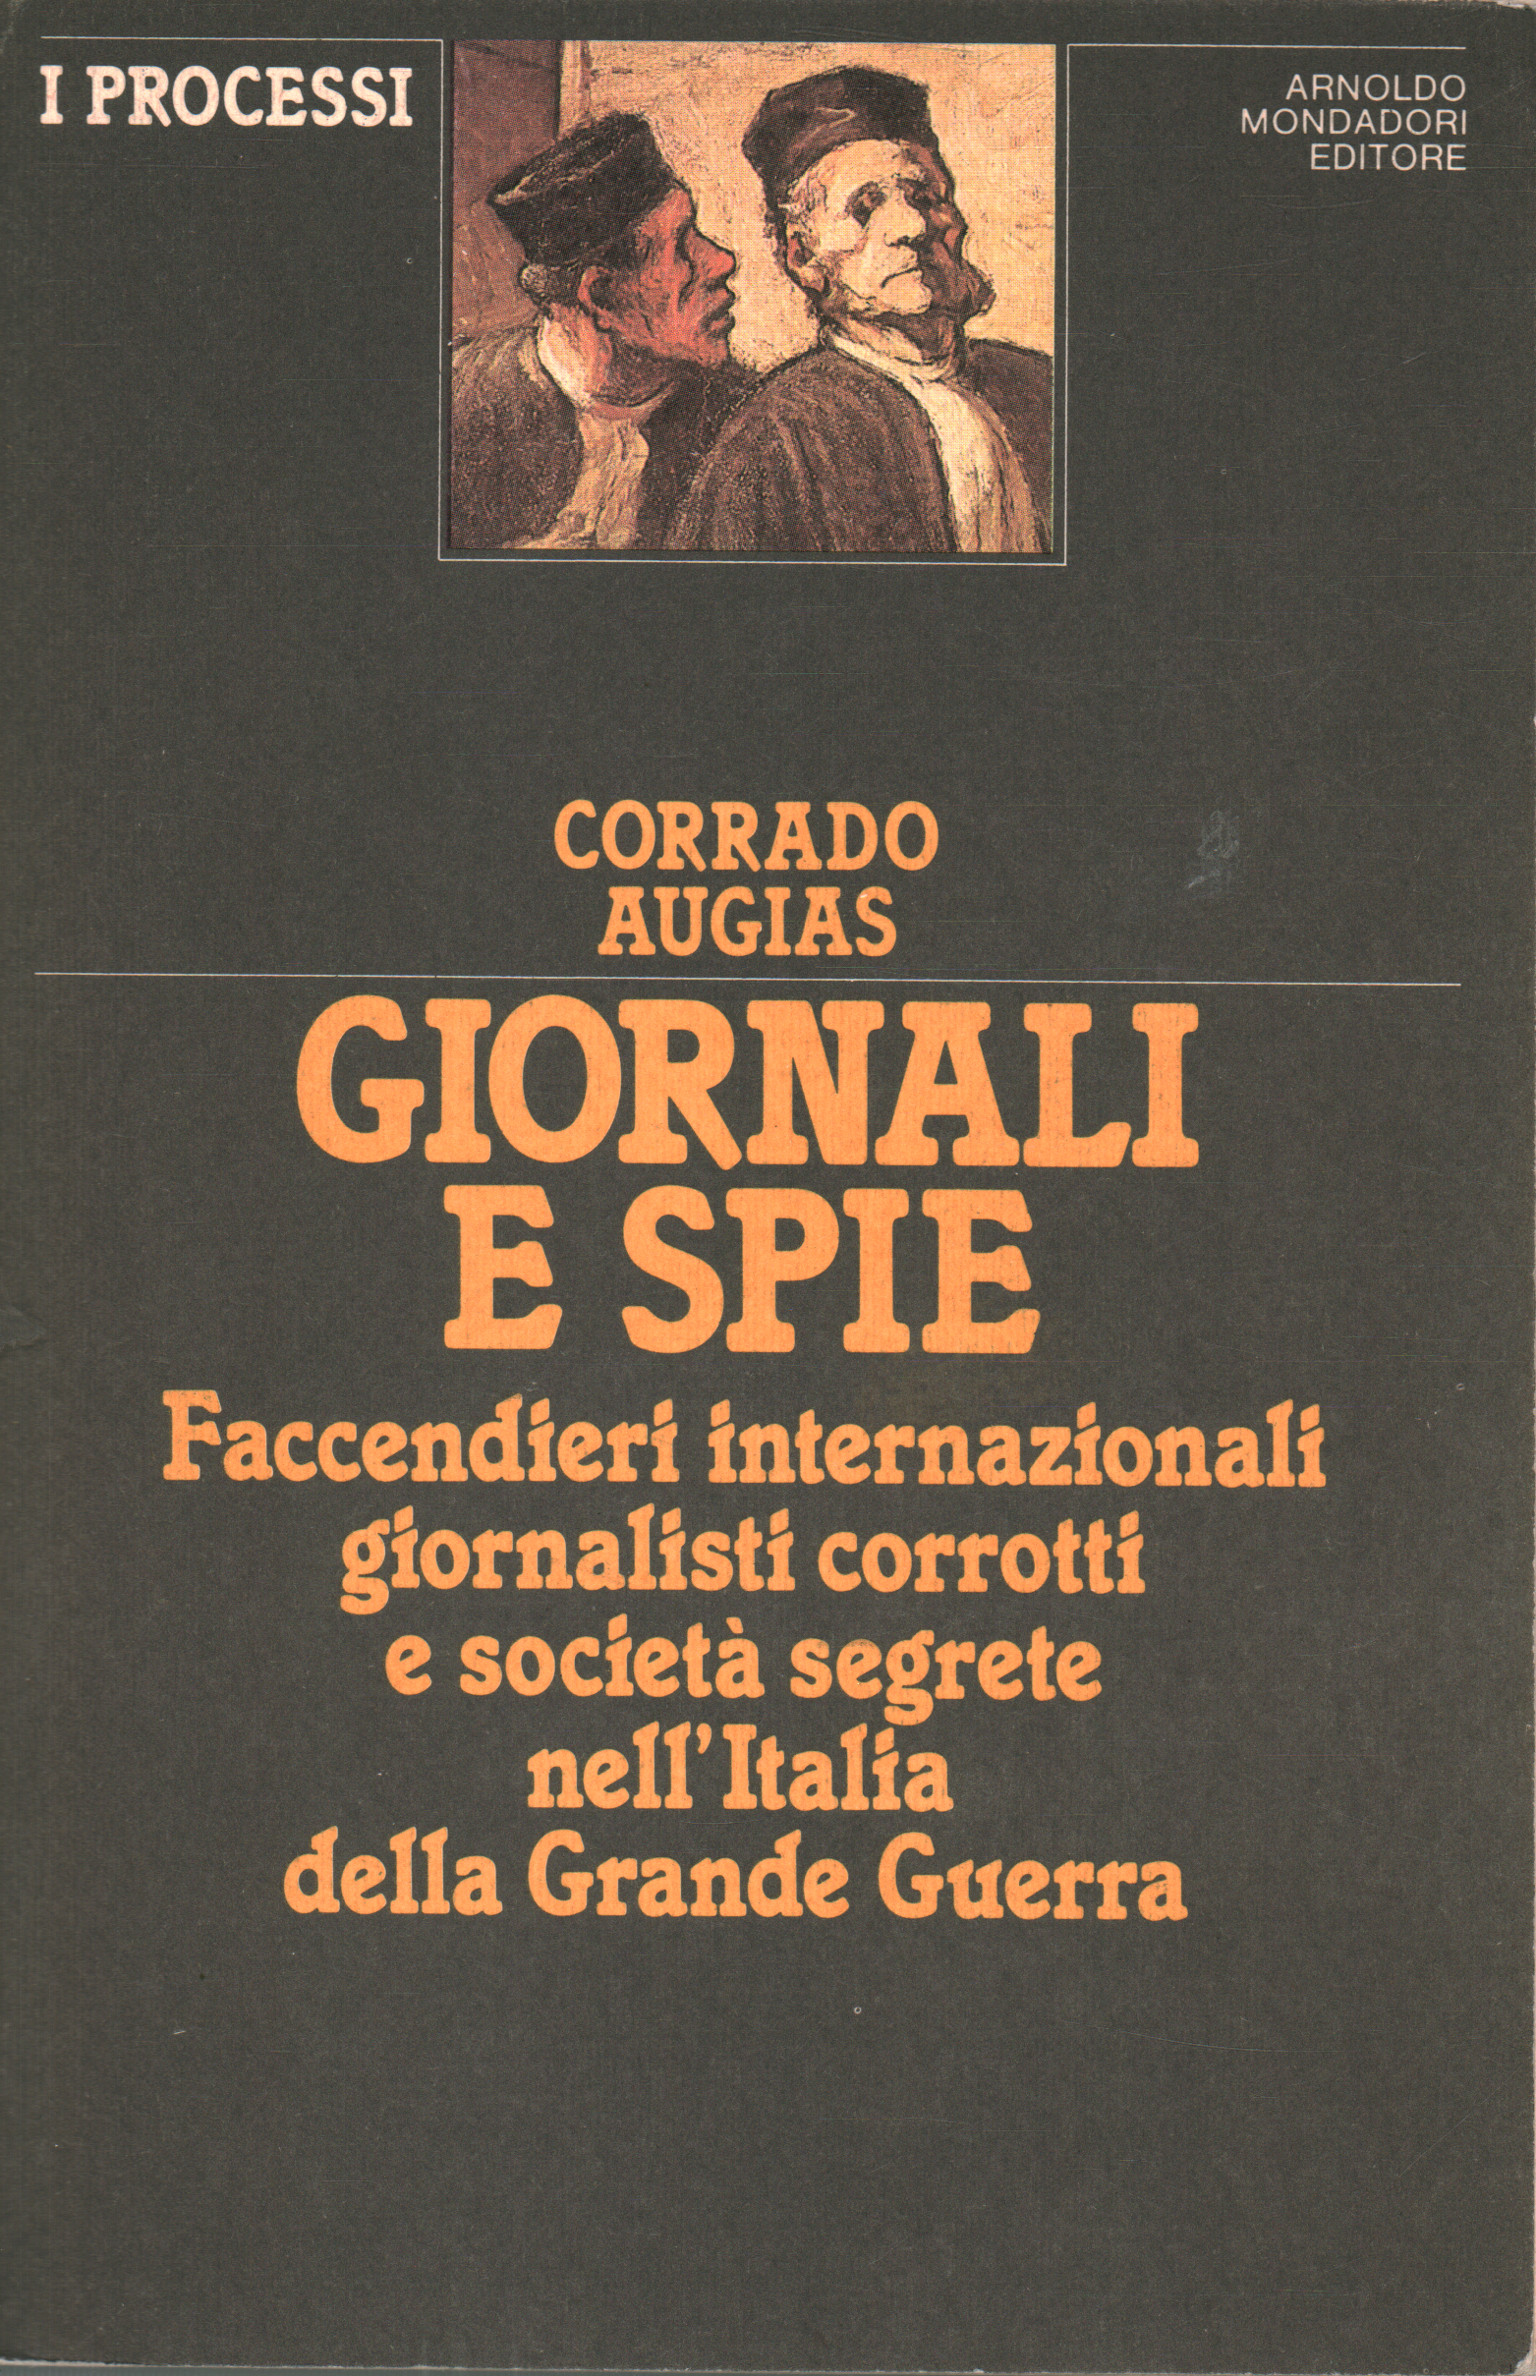 Giornali e spie, Corrado Augias